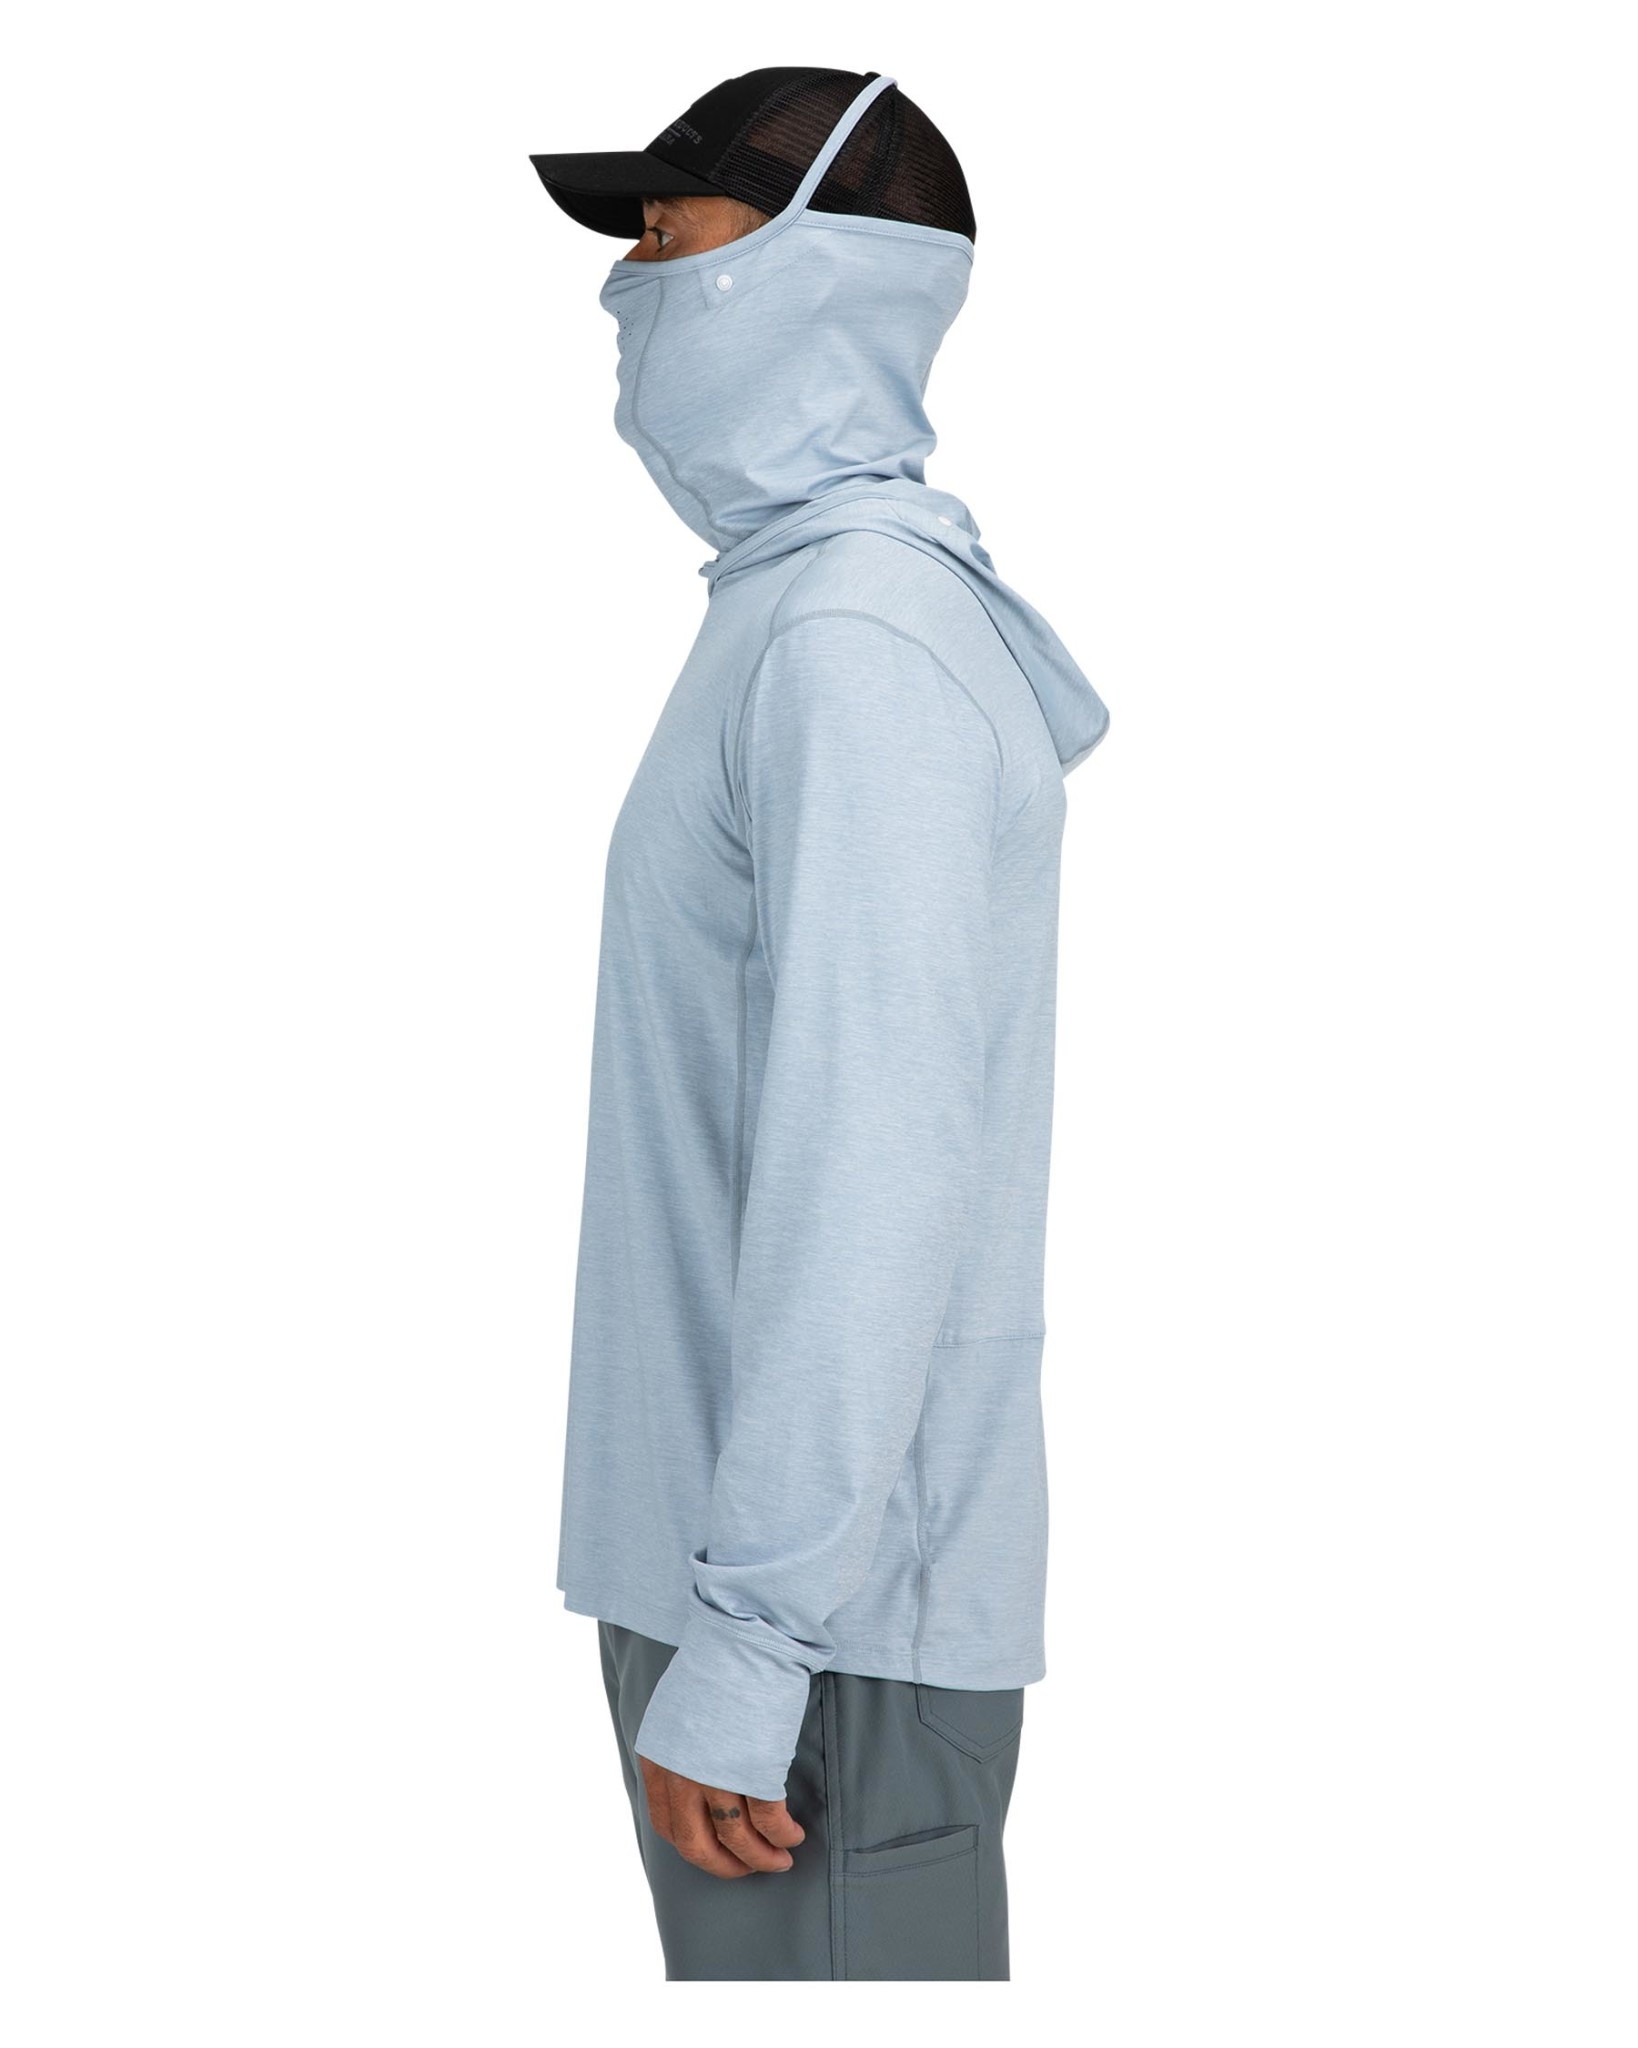 Simms SolarFlex Long-Sleeve Hoodie for Ladies